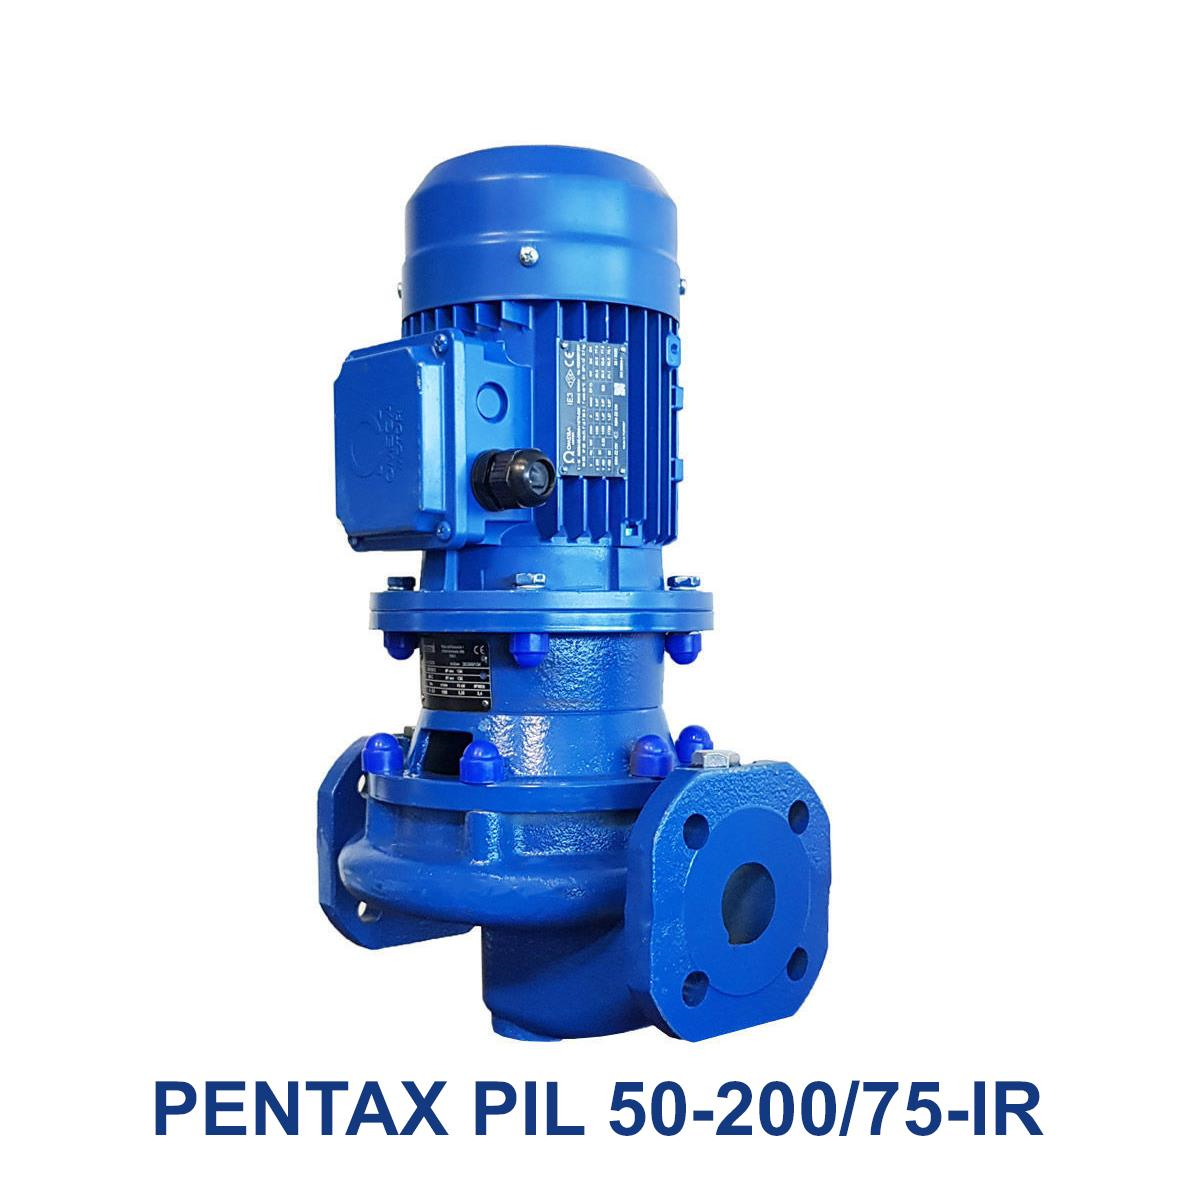 PENTAX-PIL-50-200-75-IR